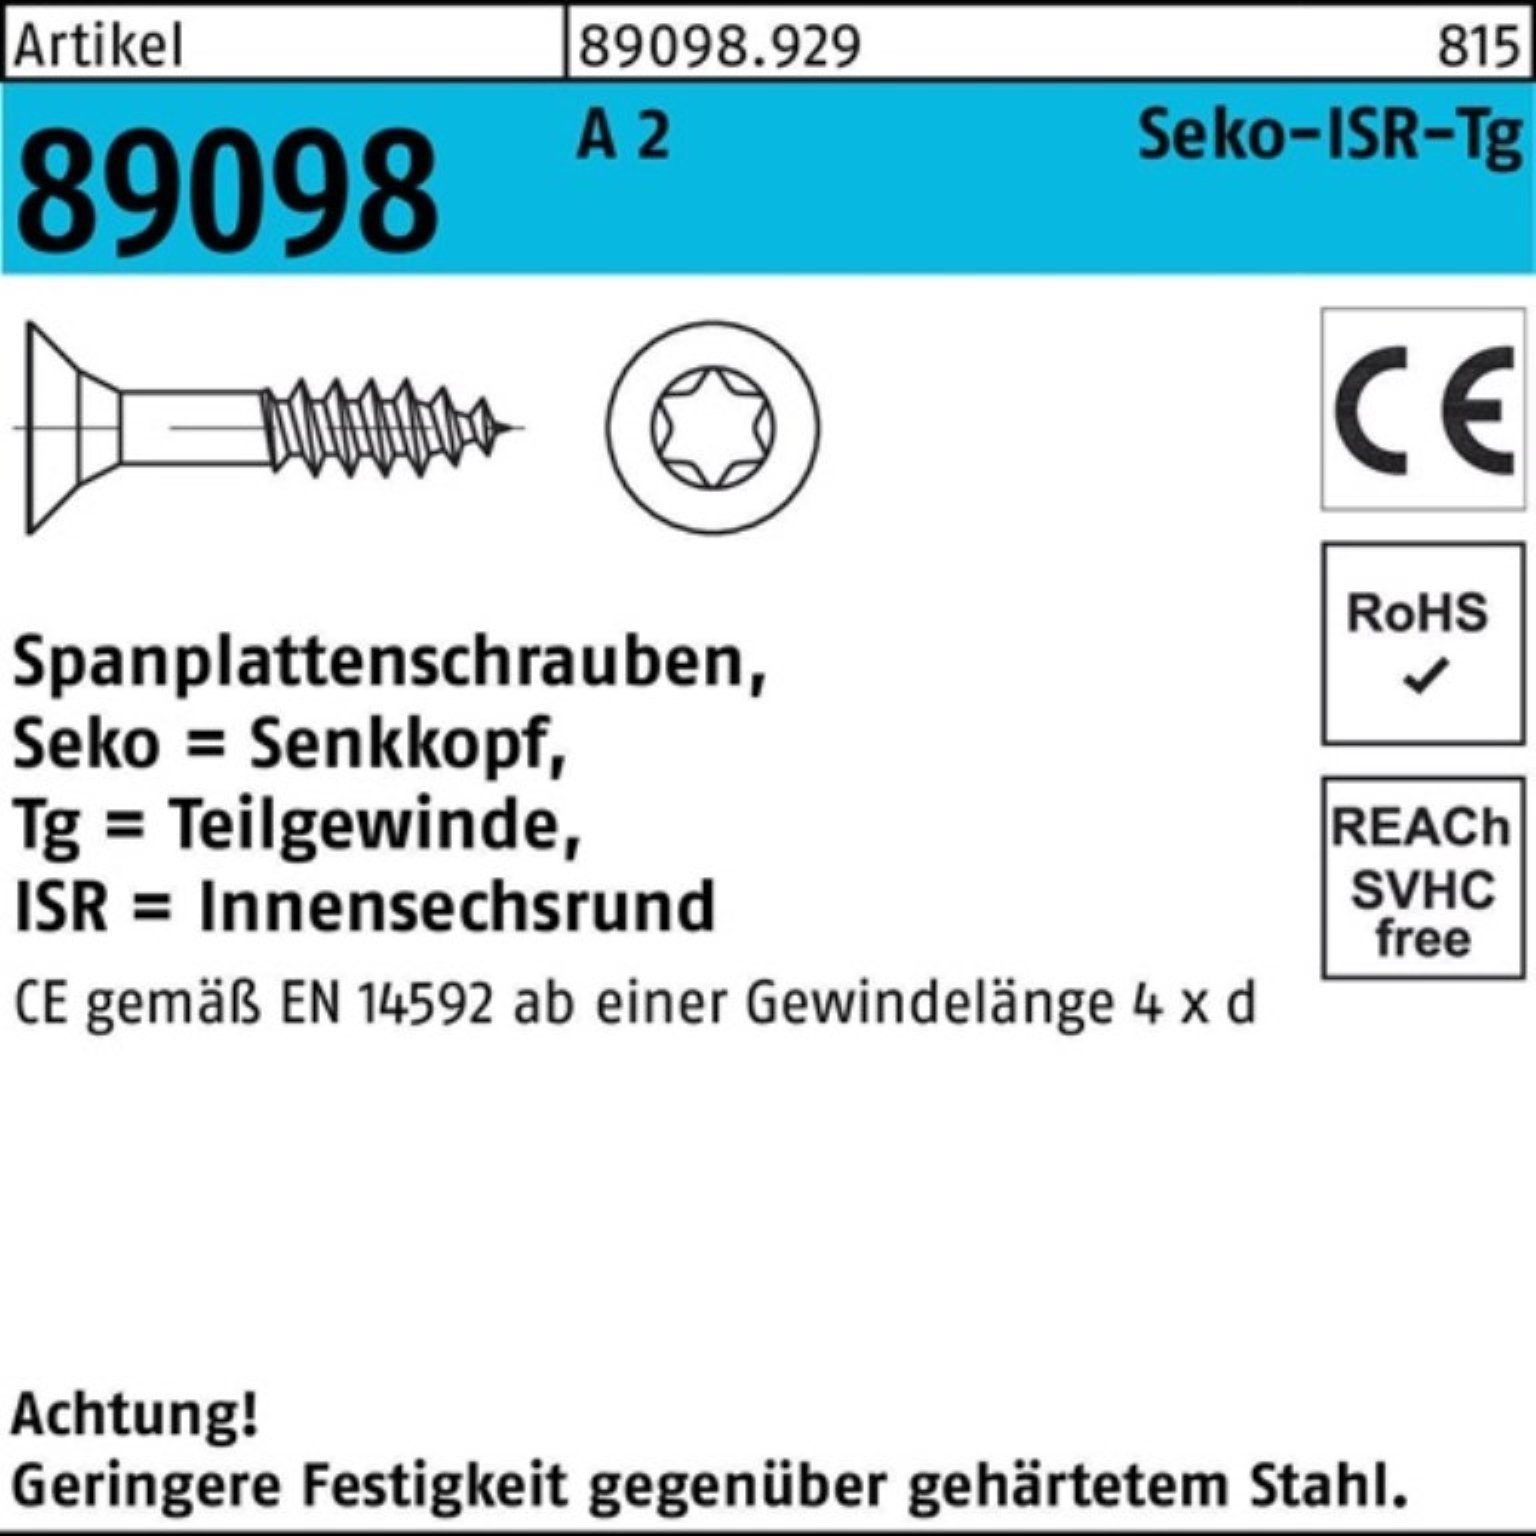 Sonderpreisverkauf Reyher Spanplattenschraube 500er Pack 5x TG 80-T25 Spanplattenschraube A S R ISR 500 2 89098 SEKO